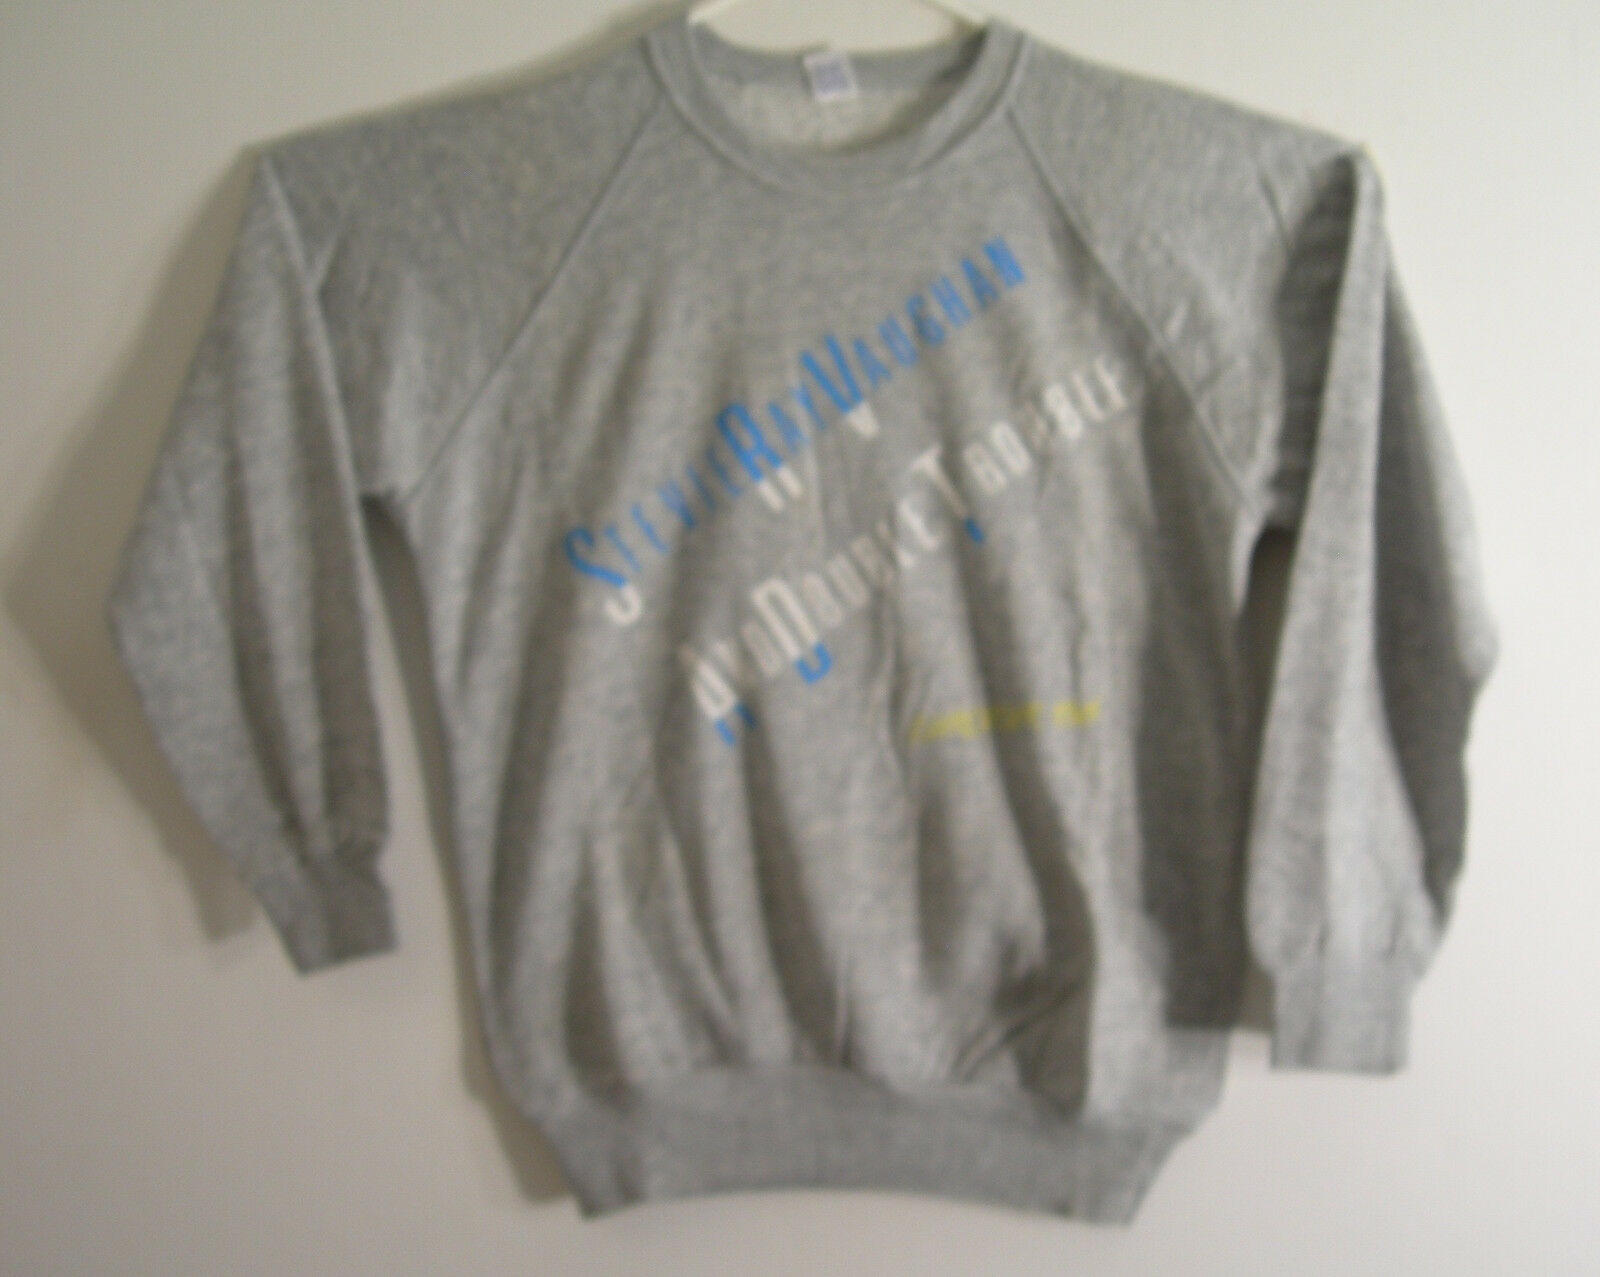 Stevie Ray Vaughan Concert Sweatshirt 1986 Soul To Soul